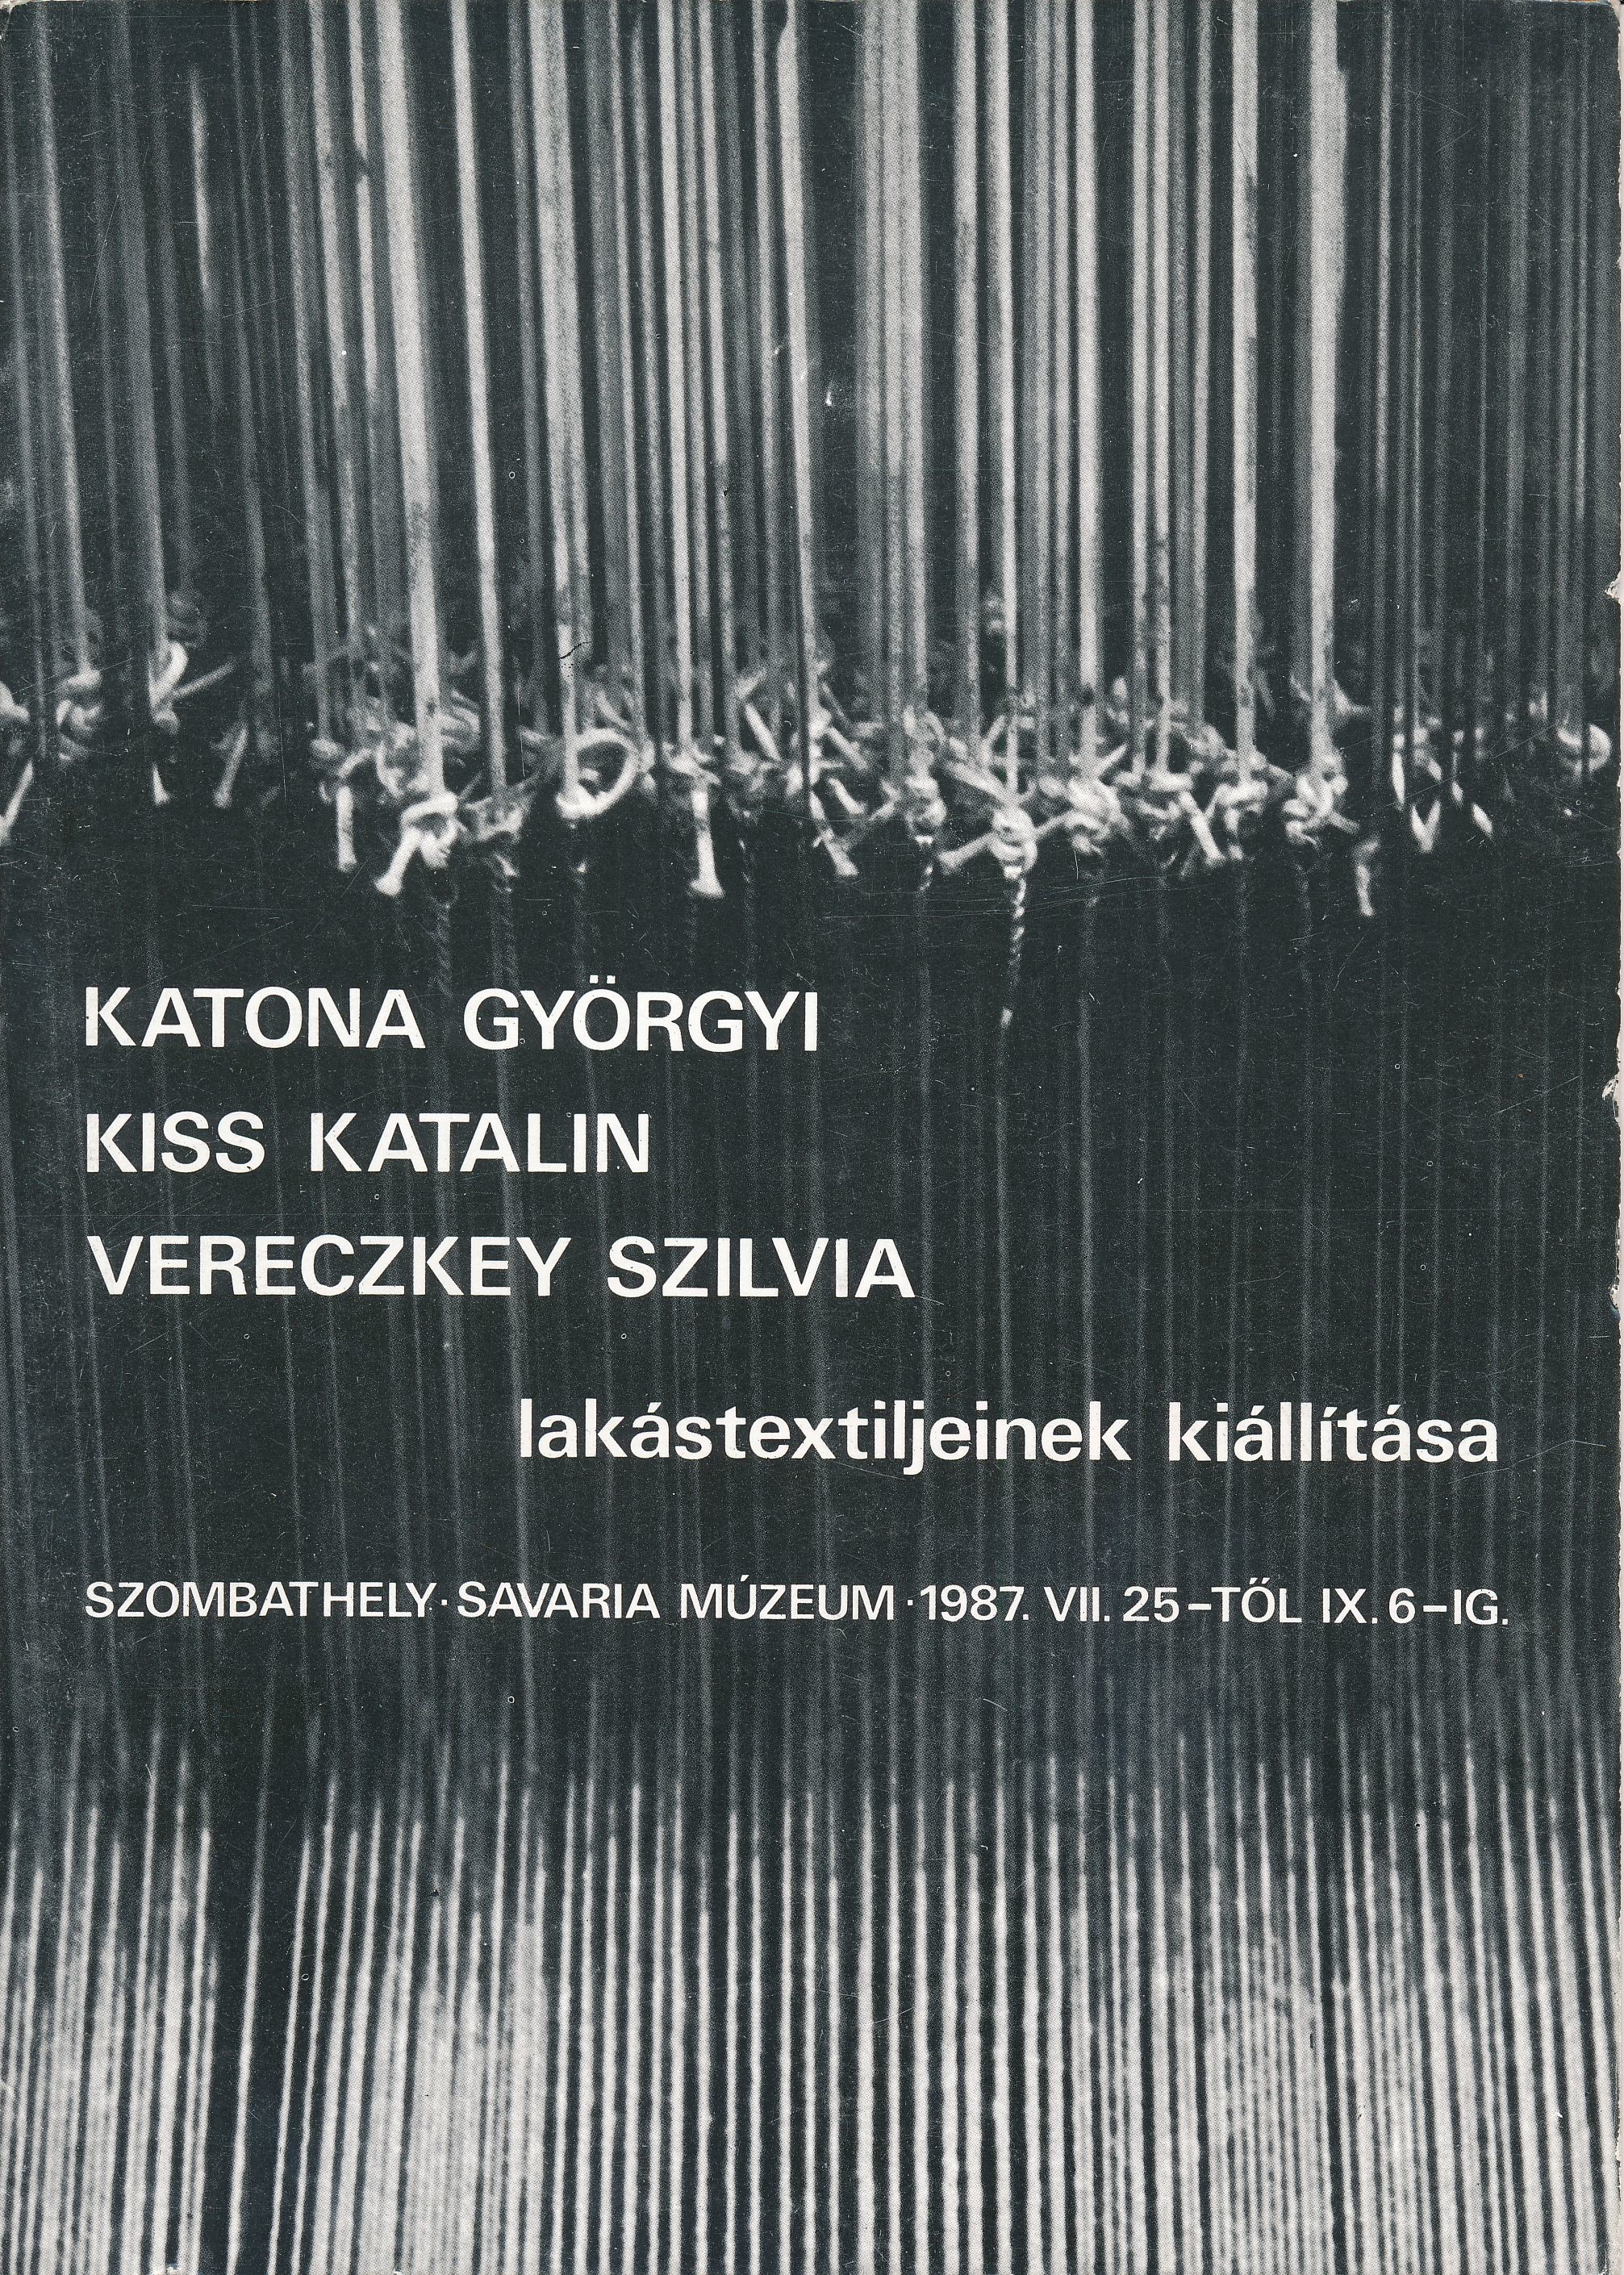 Katona Györgyi Kiss Katalin Vereczkey Szilvia lakástextiljeinek kiállítása Szombathely Savaria Múzeum 1987 (Design DigiTár – Iparművészeti archívum CC BY-NC-SA)